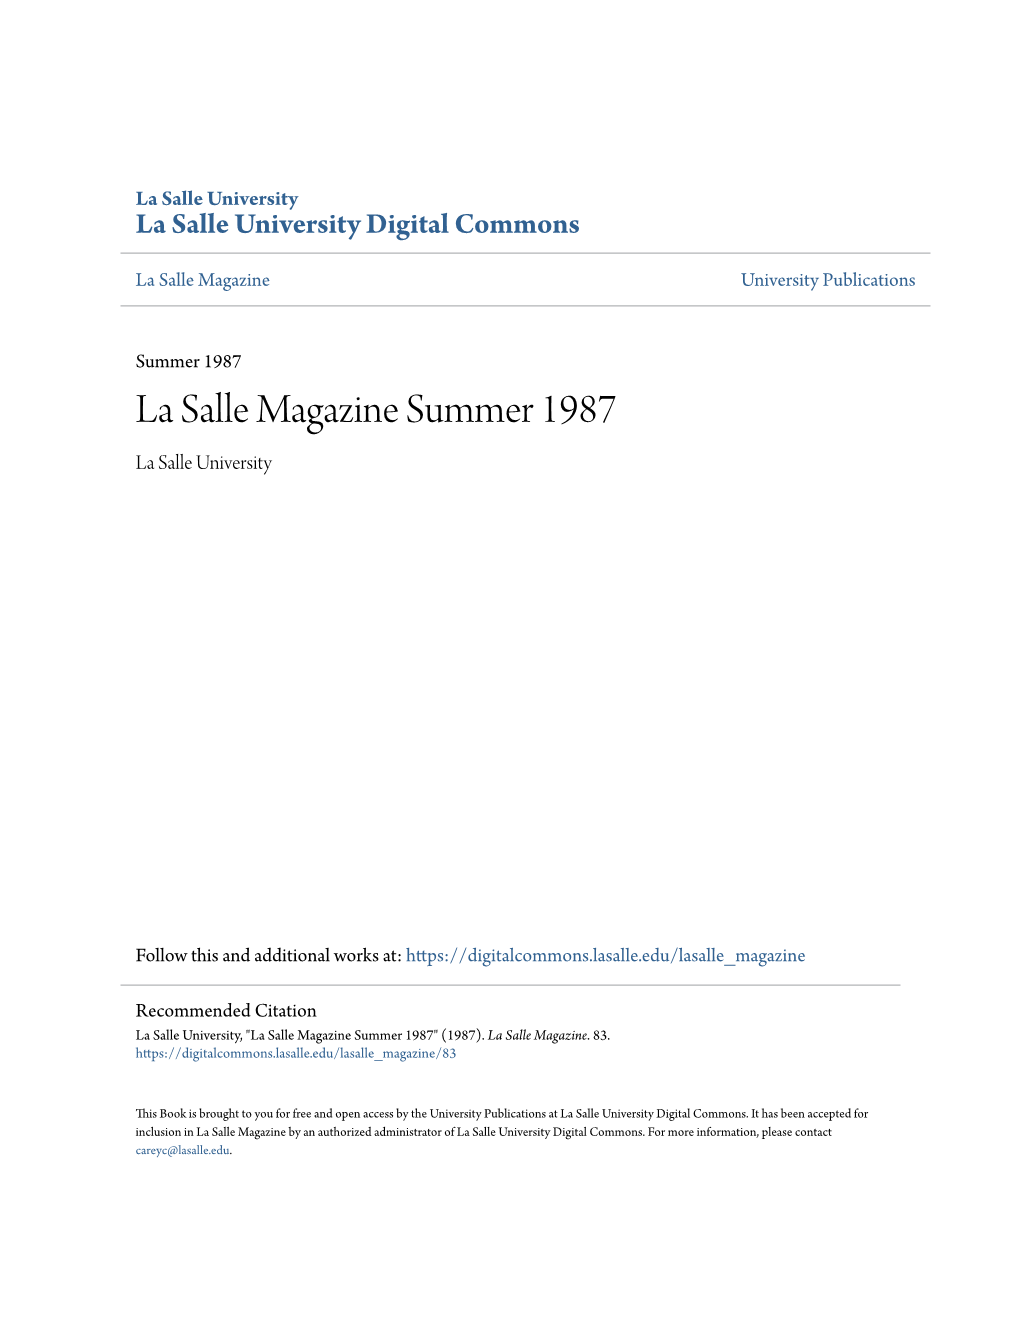 La Salle Magazine Summer 1987 La Salle University